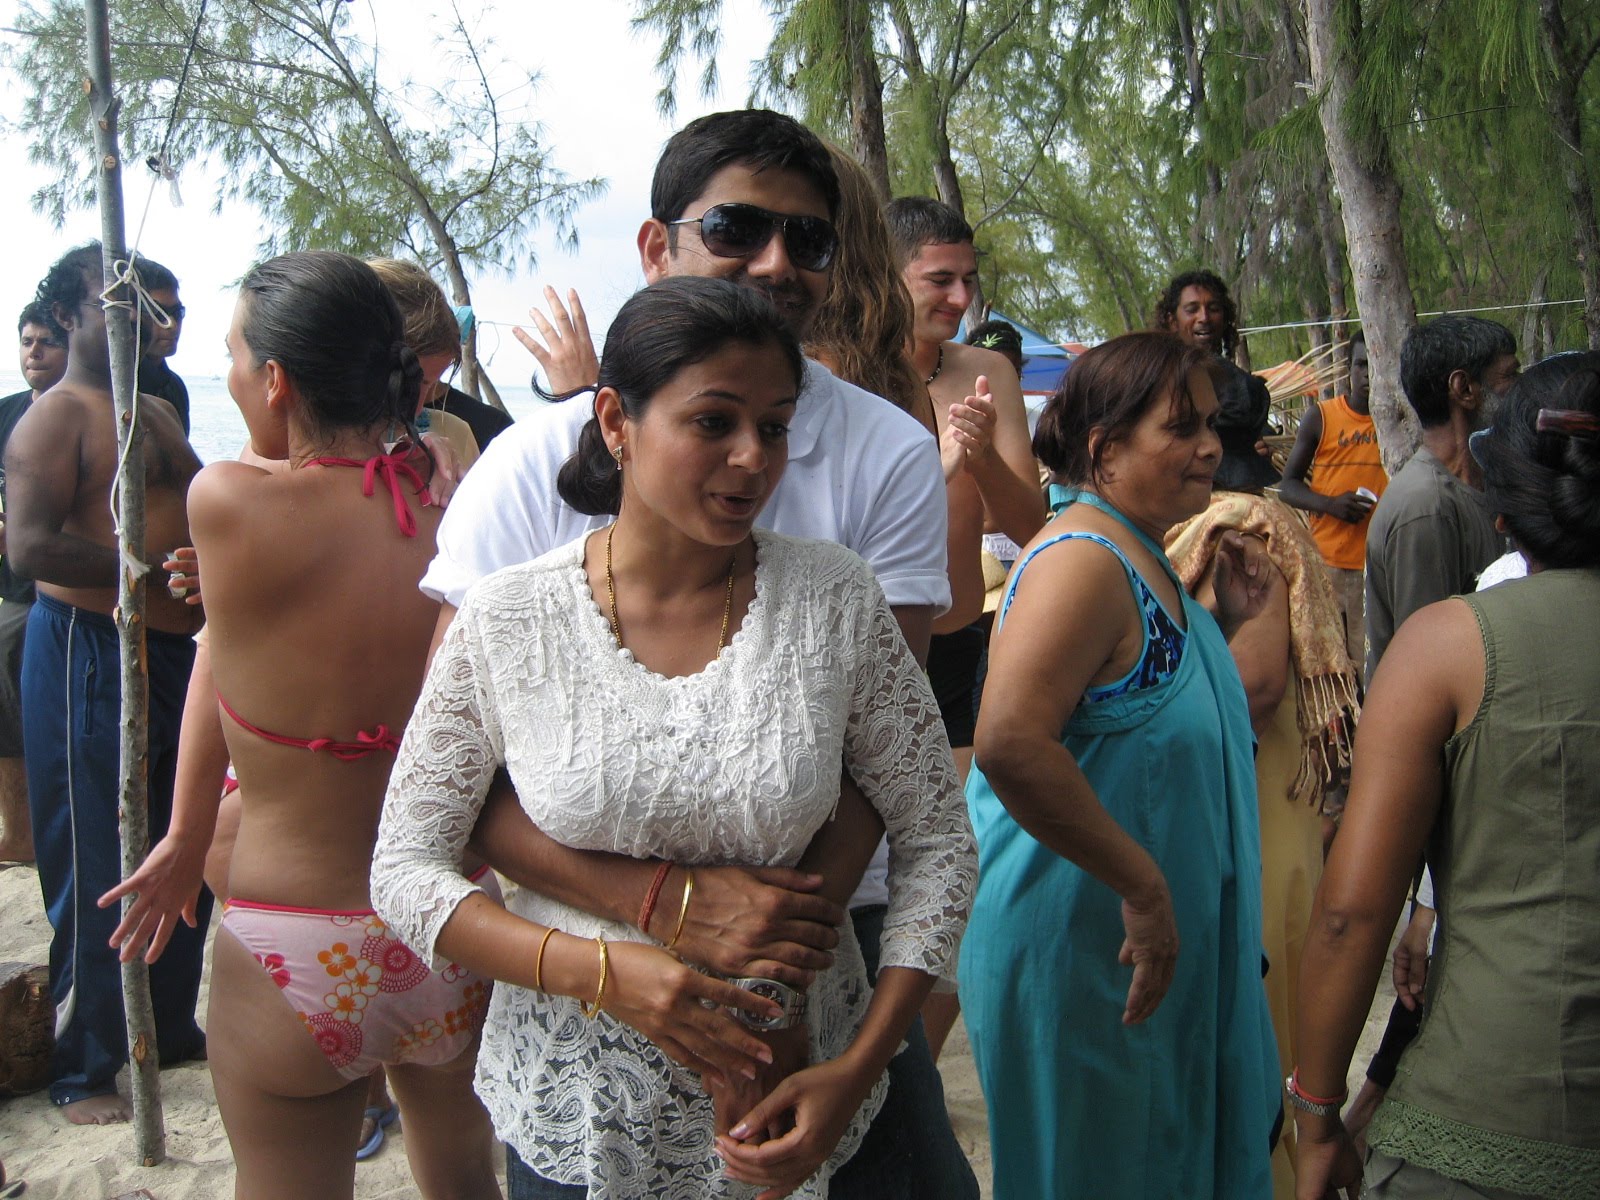 Hot Indian Group - Hot Indian Girls In Bikini At Goa Beach ChuttiyappaSexiezPix Web Porn